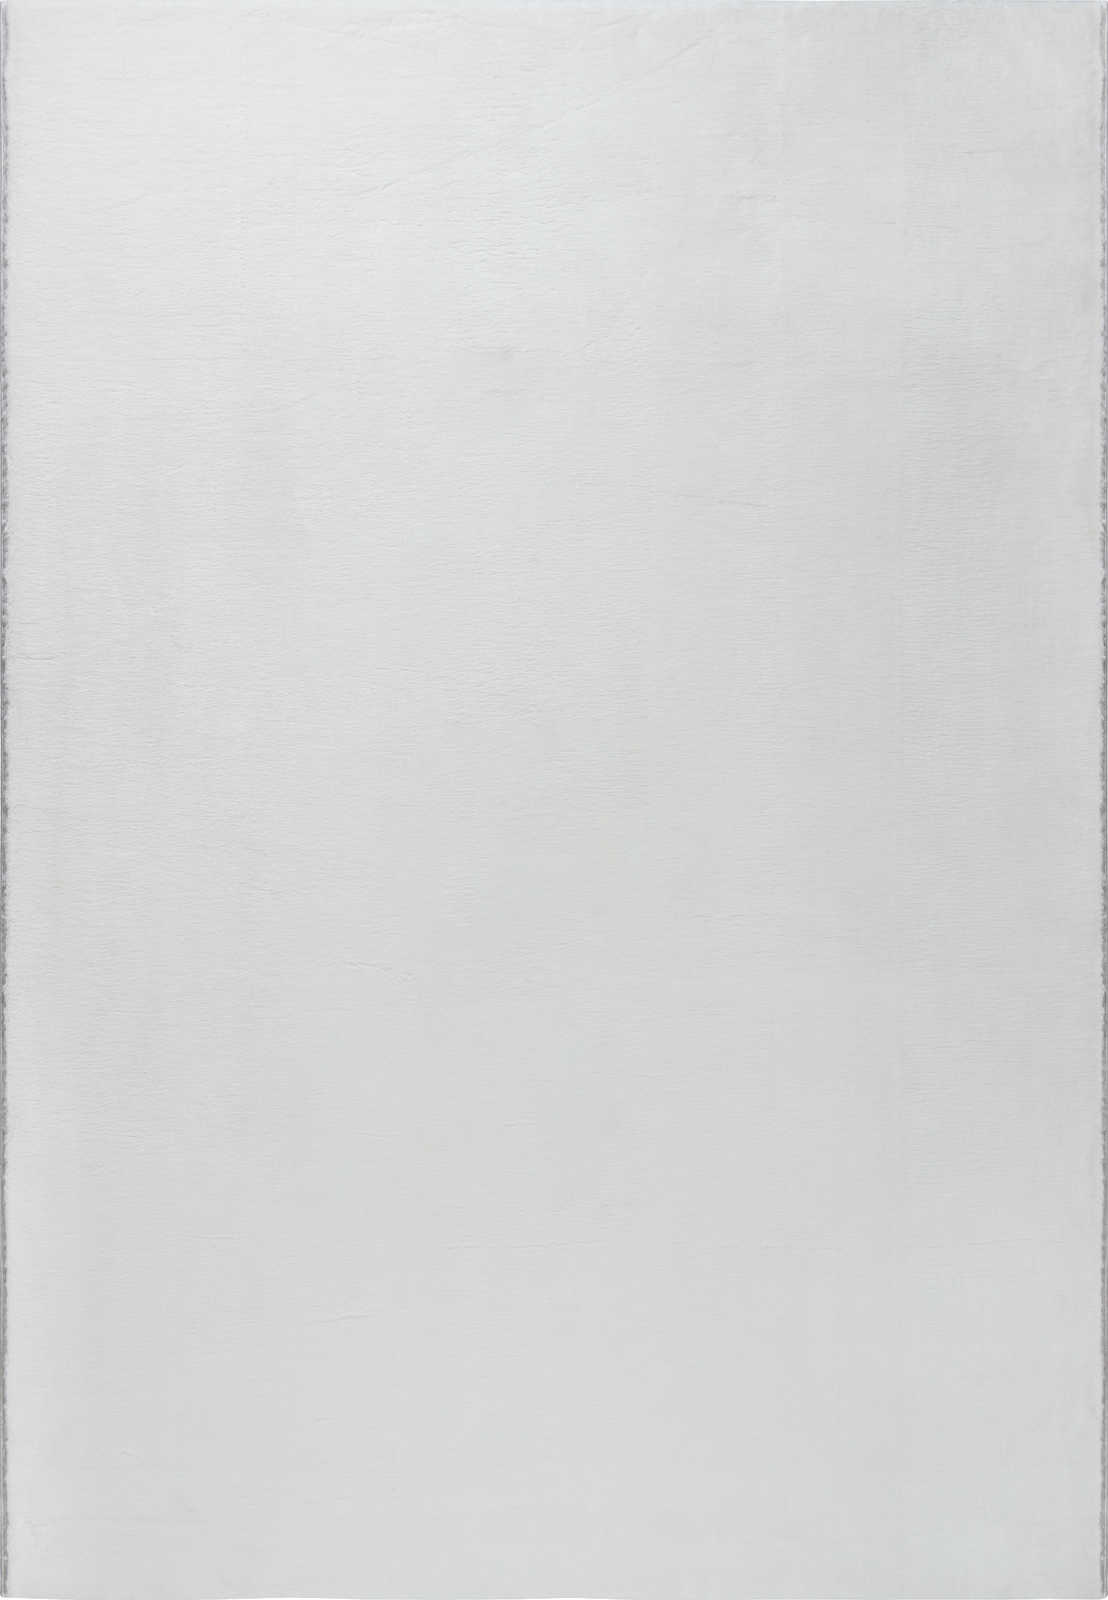             Flauschiger Hochflor Teppich in angenehmen Creme – 290 x 200 cm
        